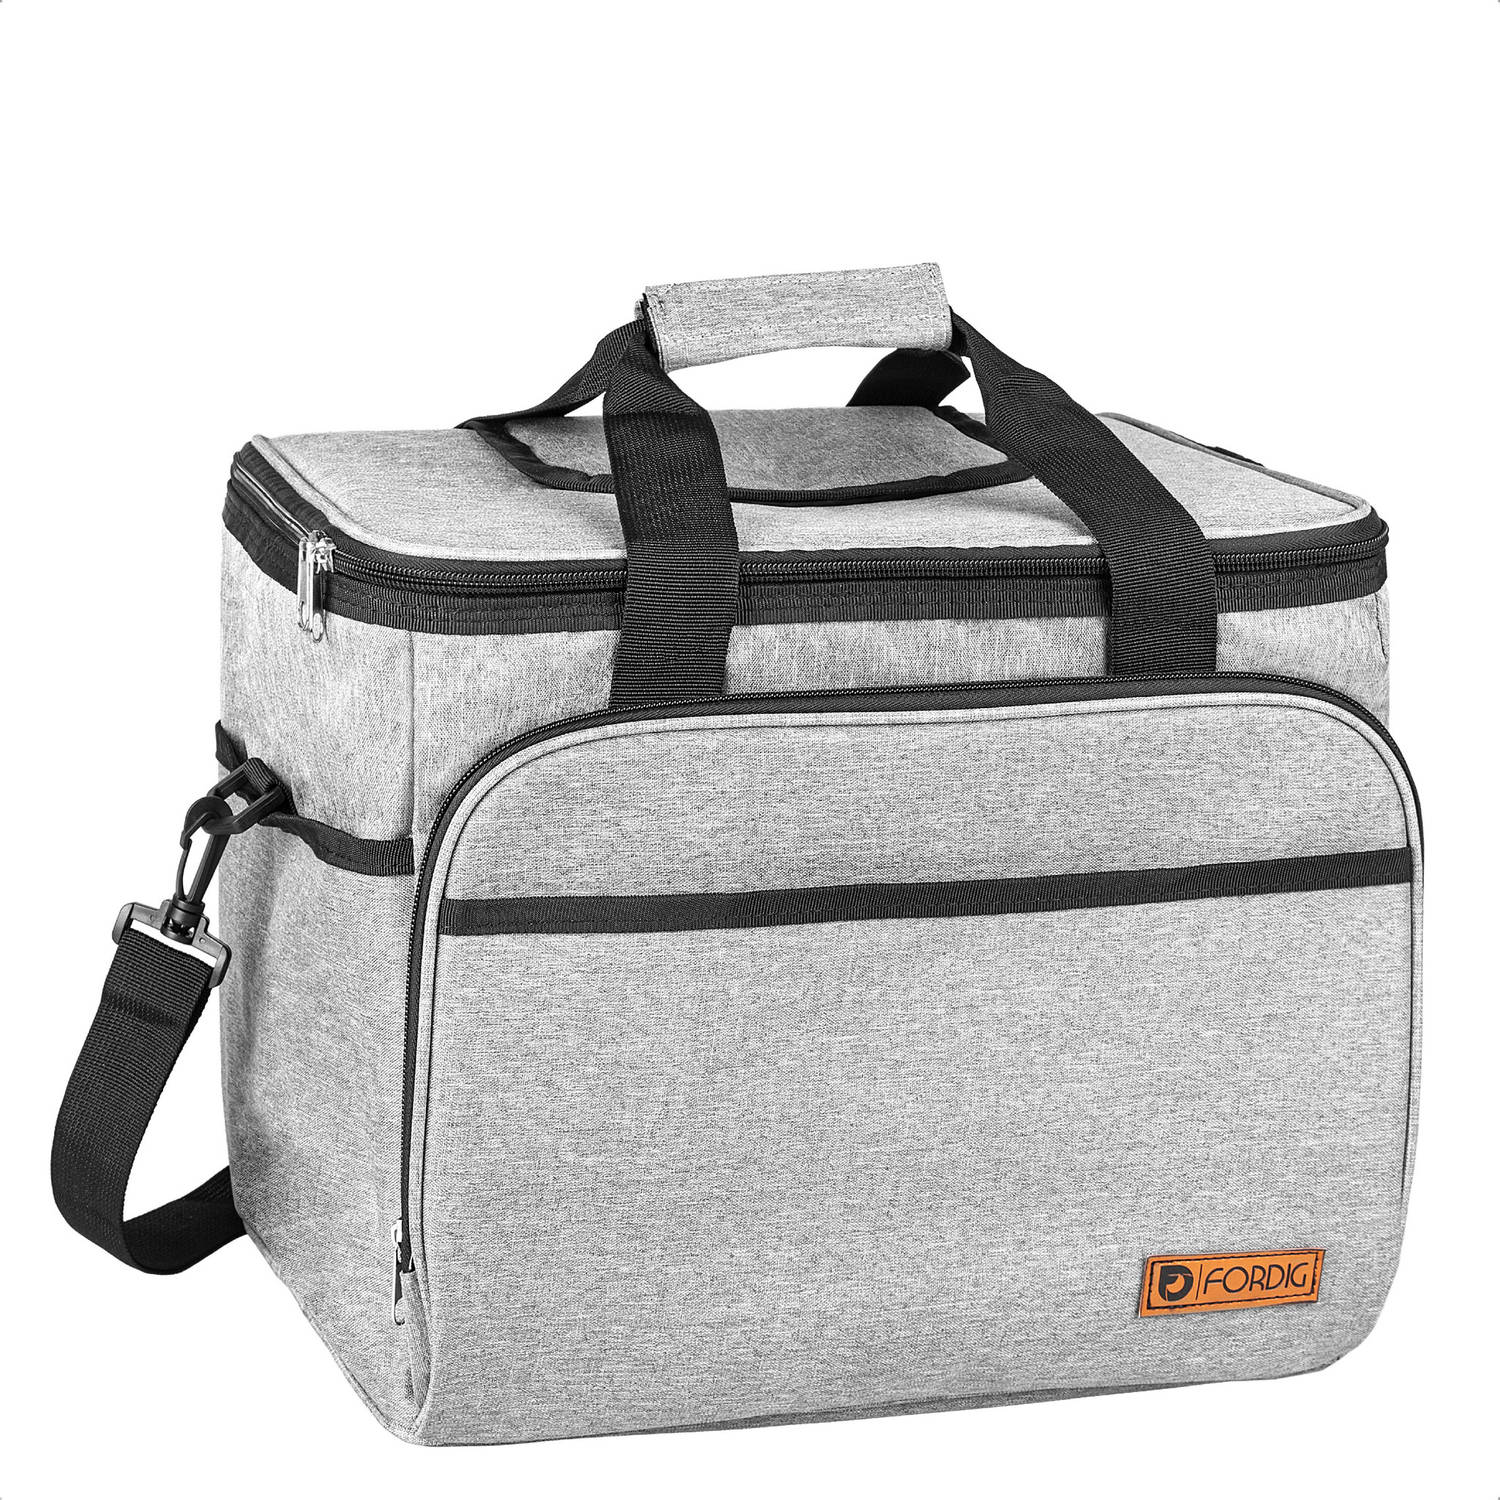 Fordig Koeltas Xl (30 Liter) Opvouwbaar Koel Tas Met Easy-acces Flap Picknick Cool Bag Coolerbag Gri